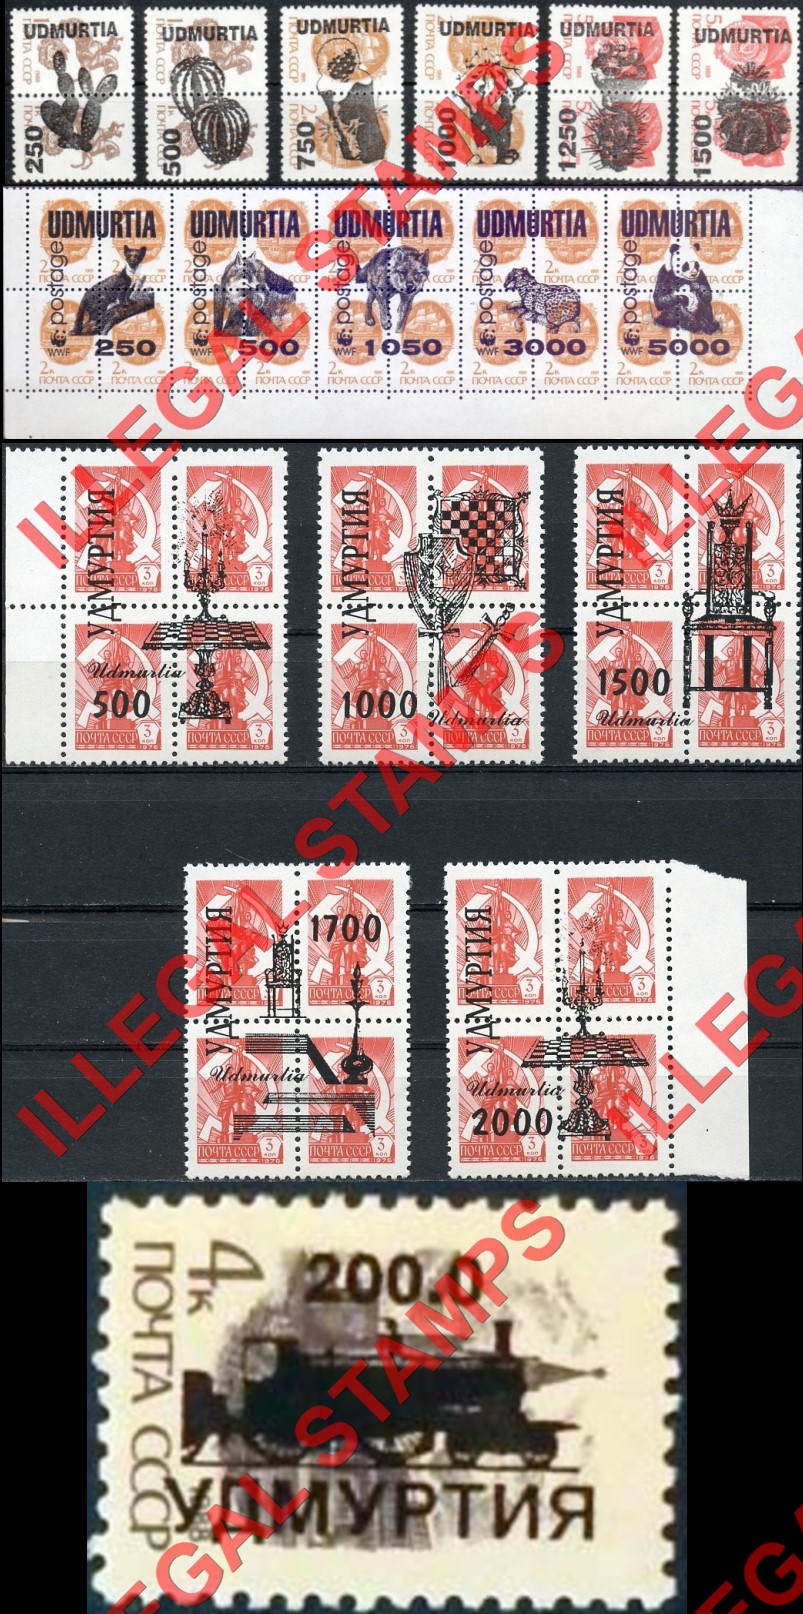 Republic of Udmurtia 1992-6 Counterfeit Illegal Stamps